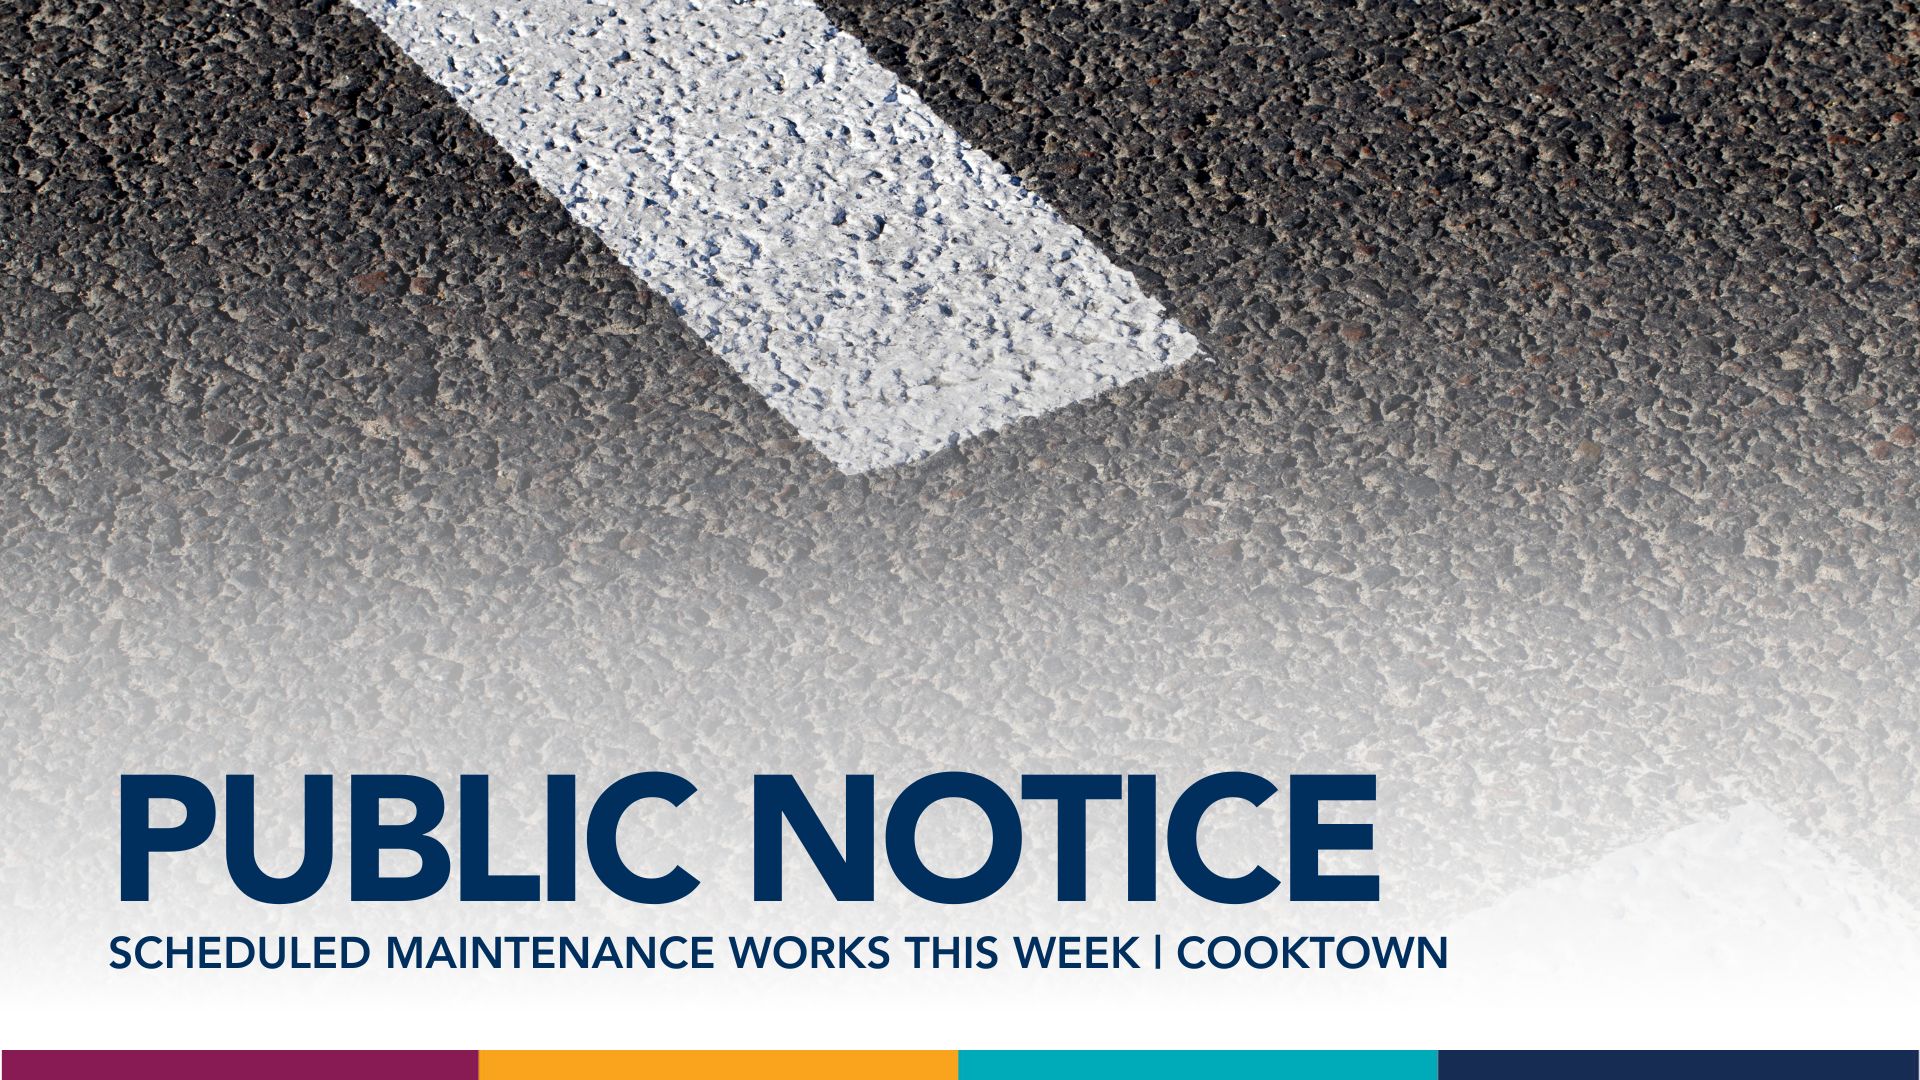 Public Notice: Scheduled Maintenance Works